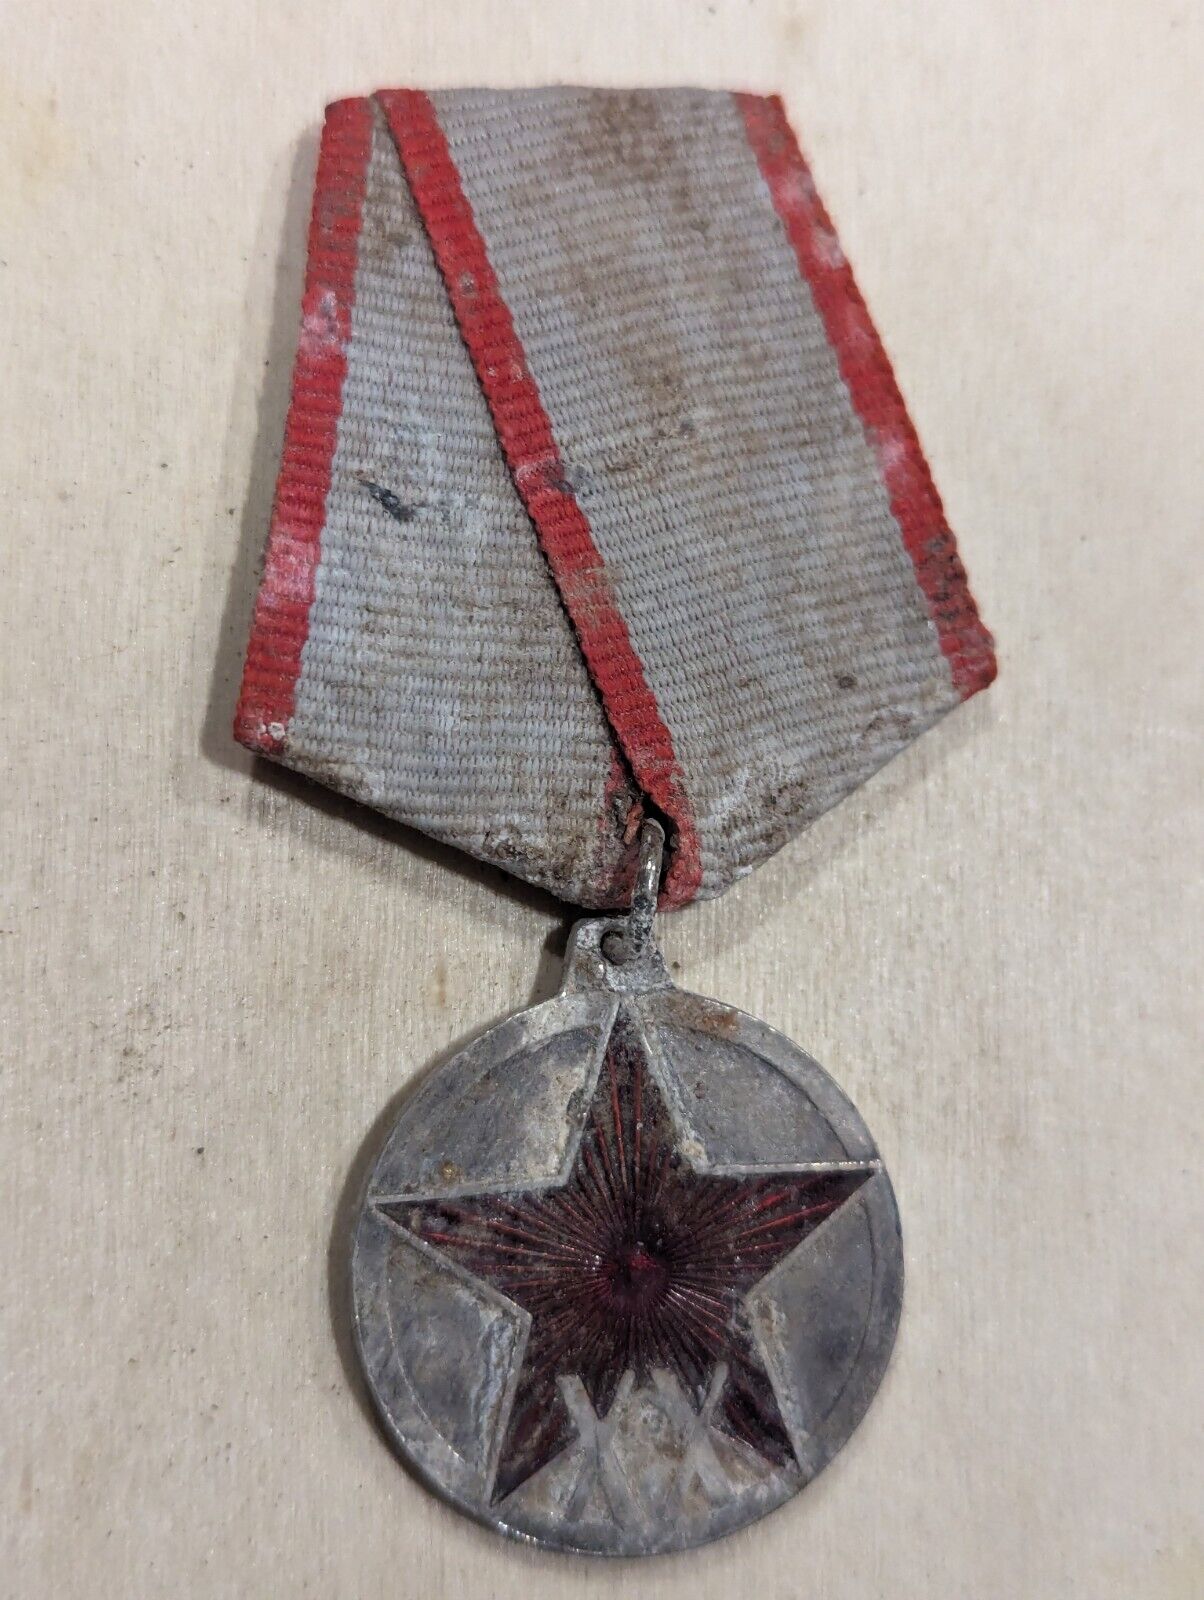 WW2 Red Star Soviet Medal USSR Soviet Badge Award Medal Read Description